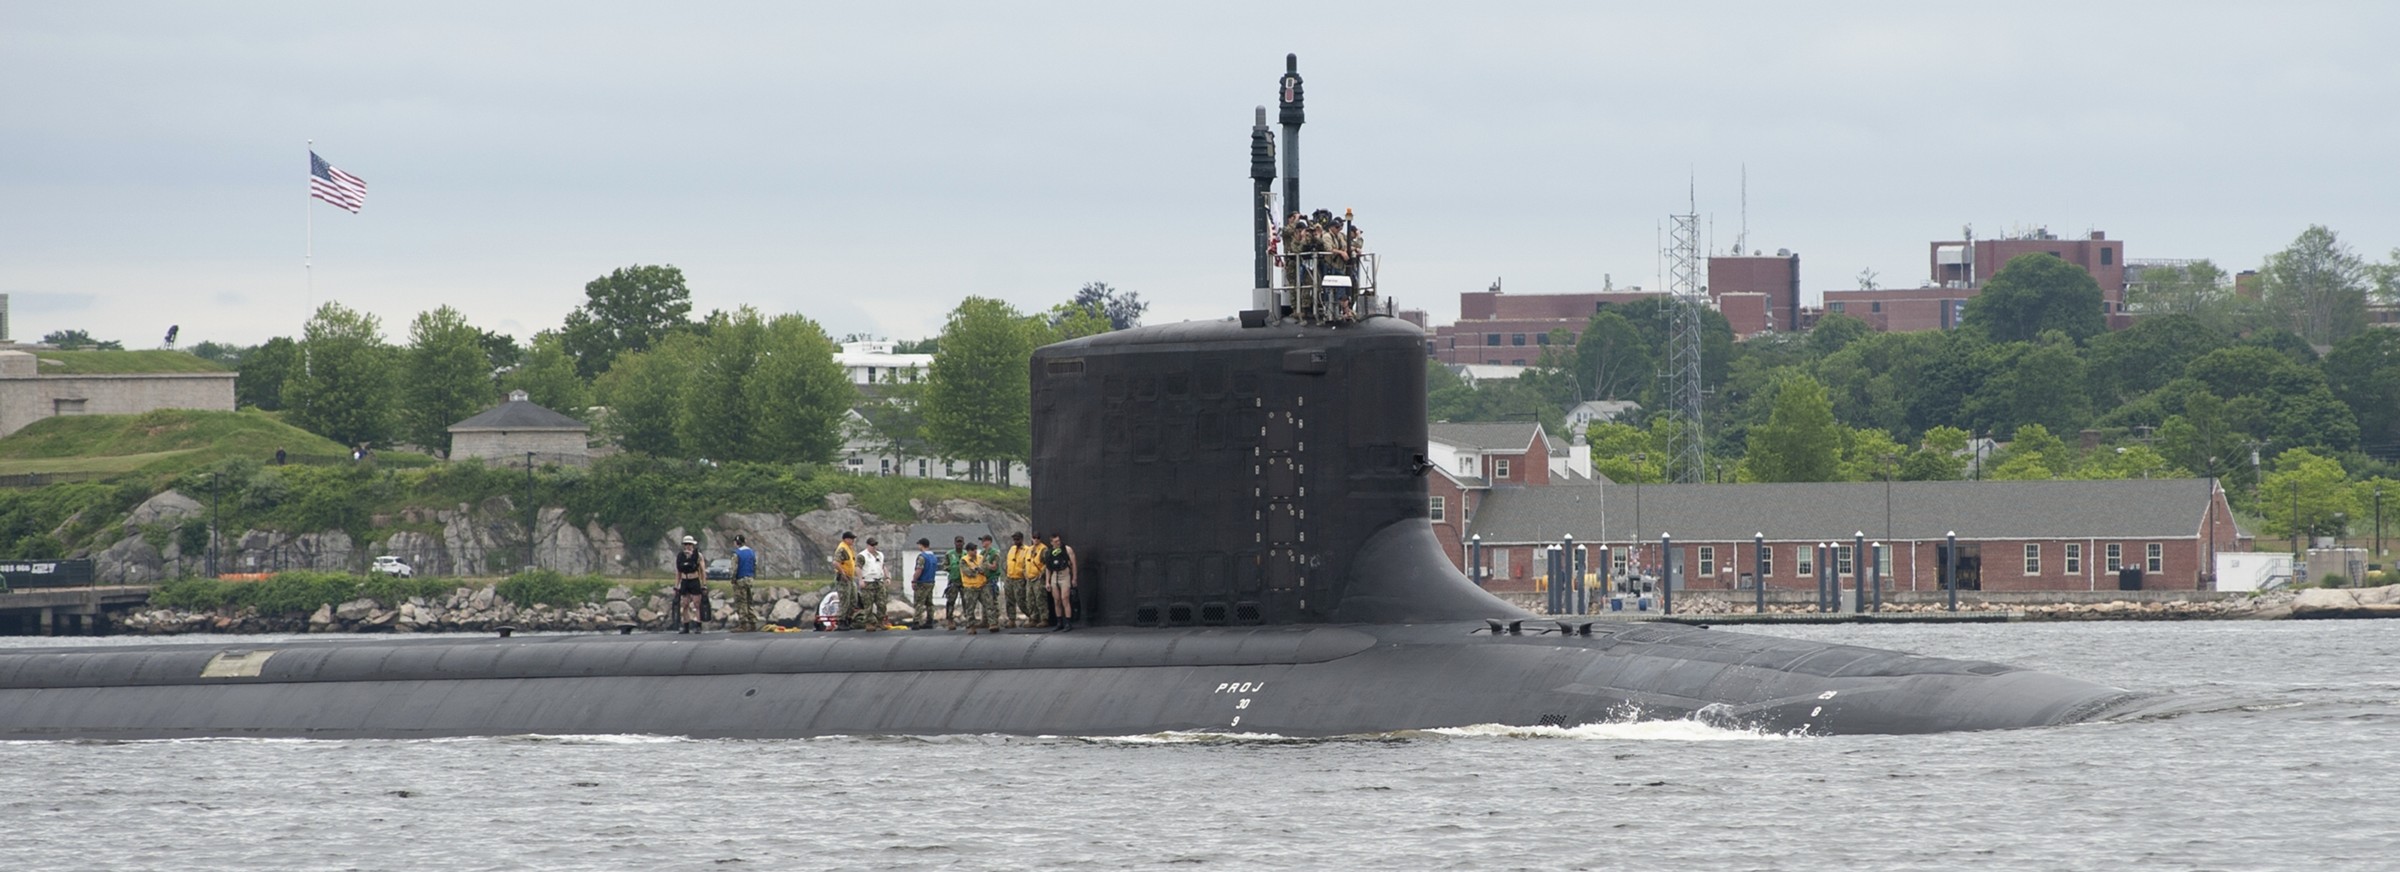 ssn-781 uss california virginia class attack submarine us navy 37 groton connecticut